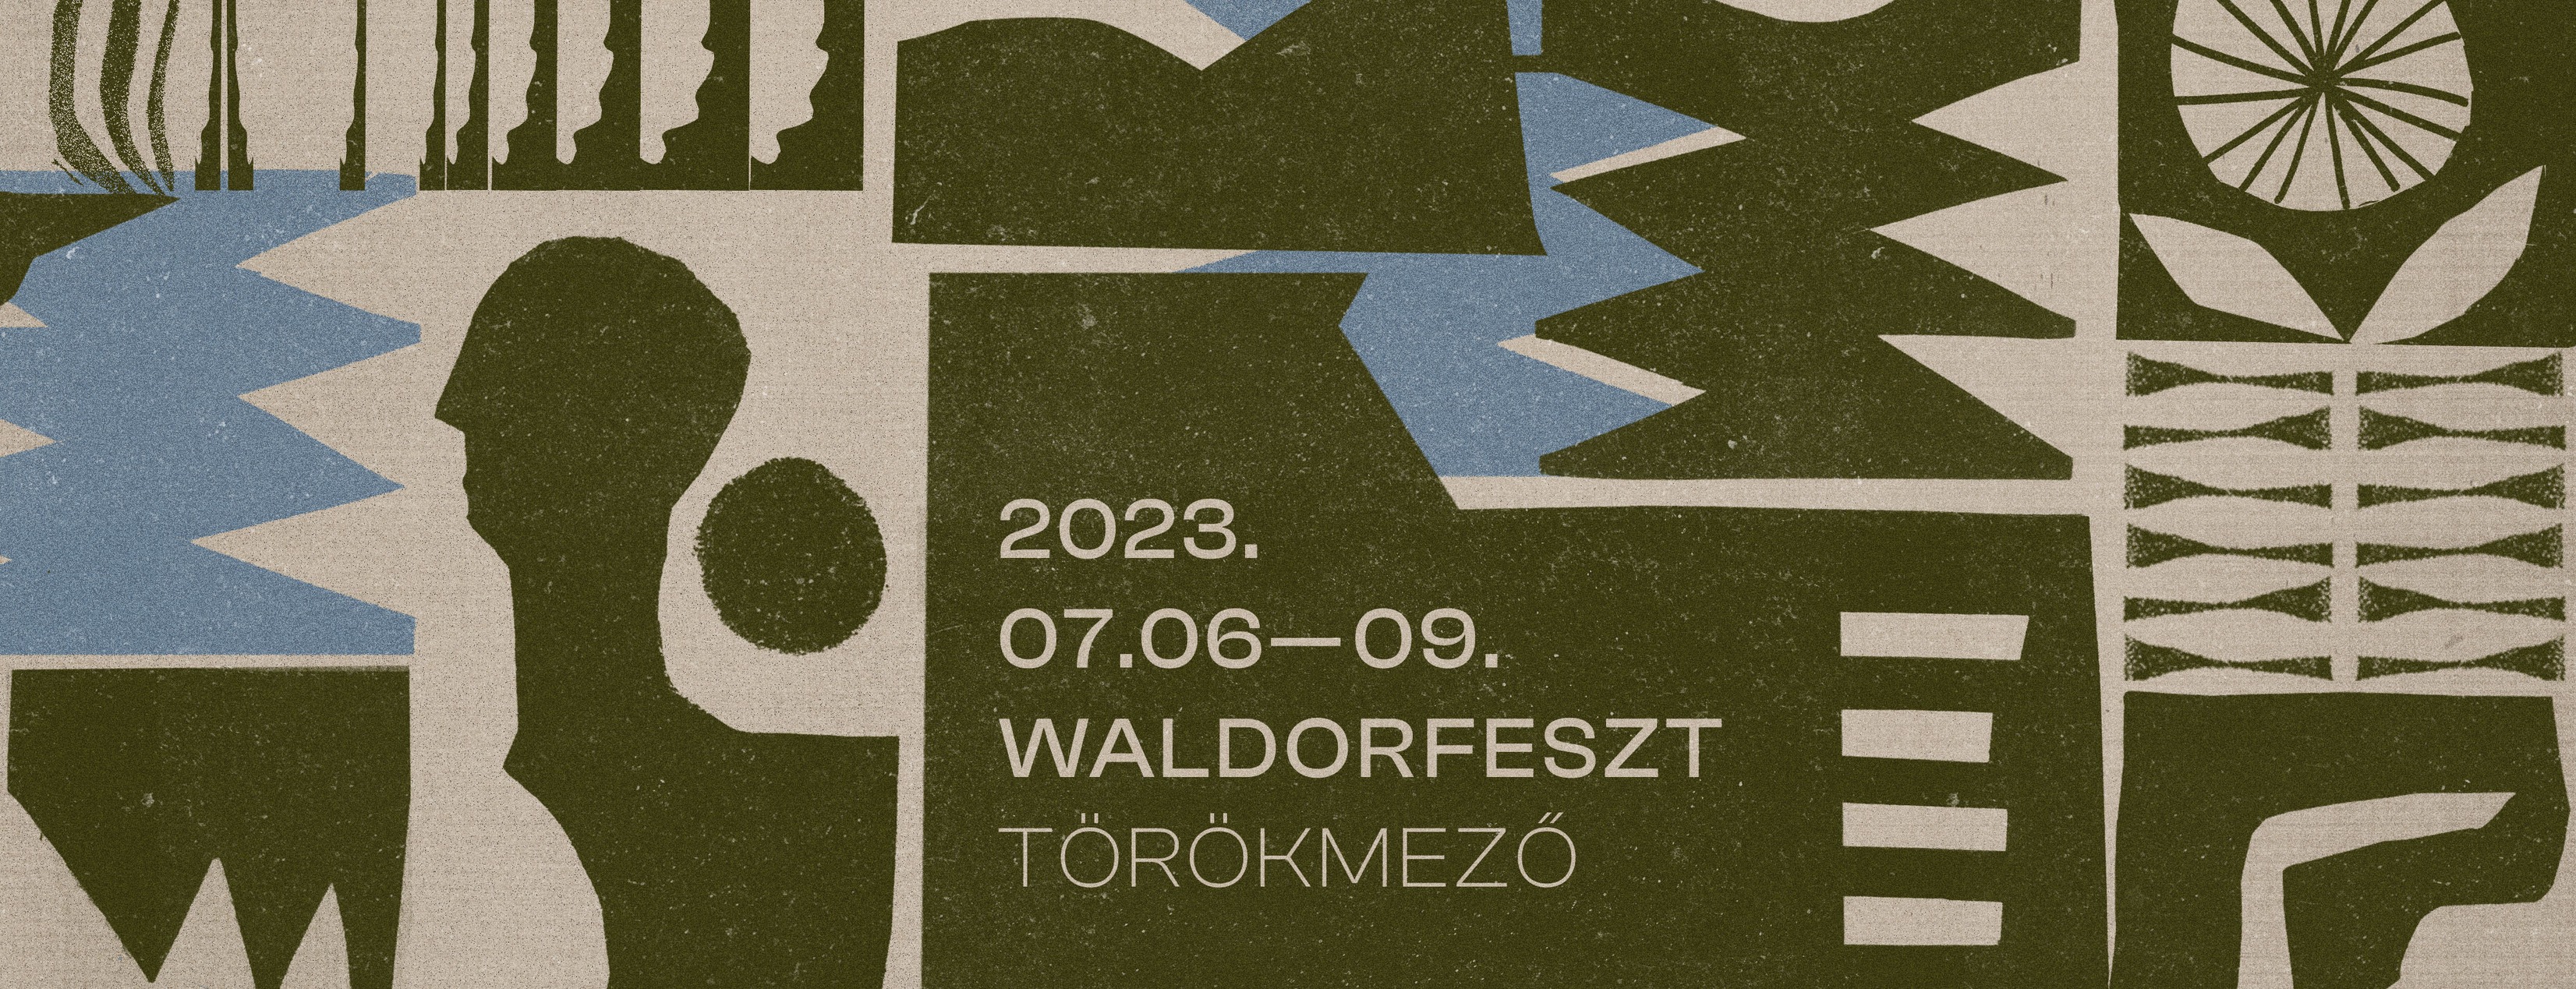 ‘Waldorfest’ @ Törökmező & Nagymaros, 6 - 9 July